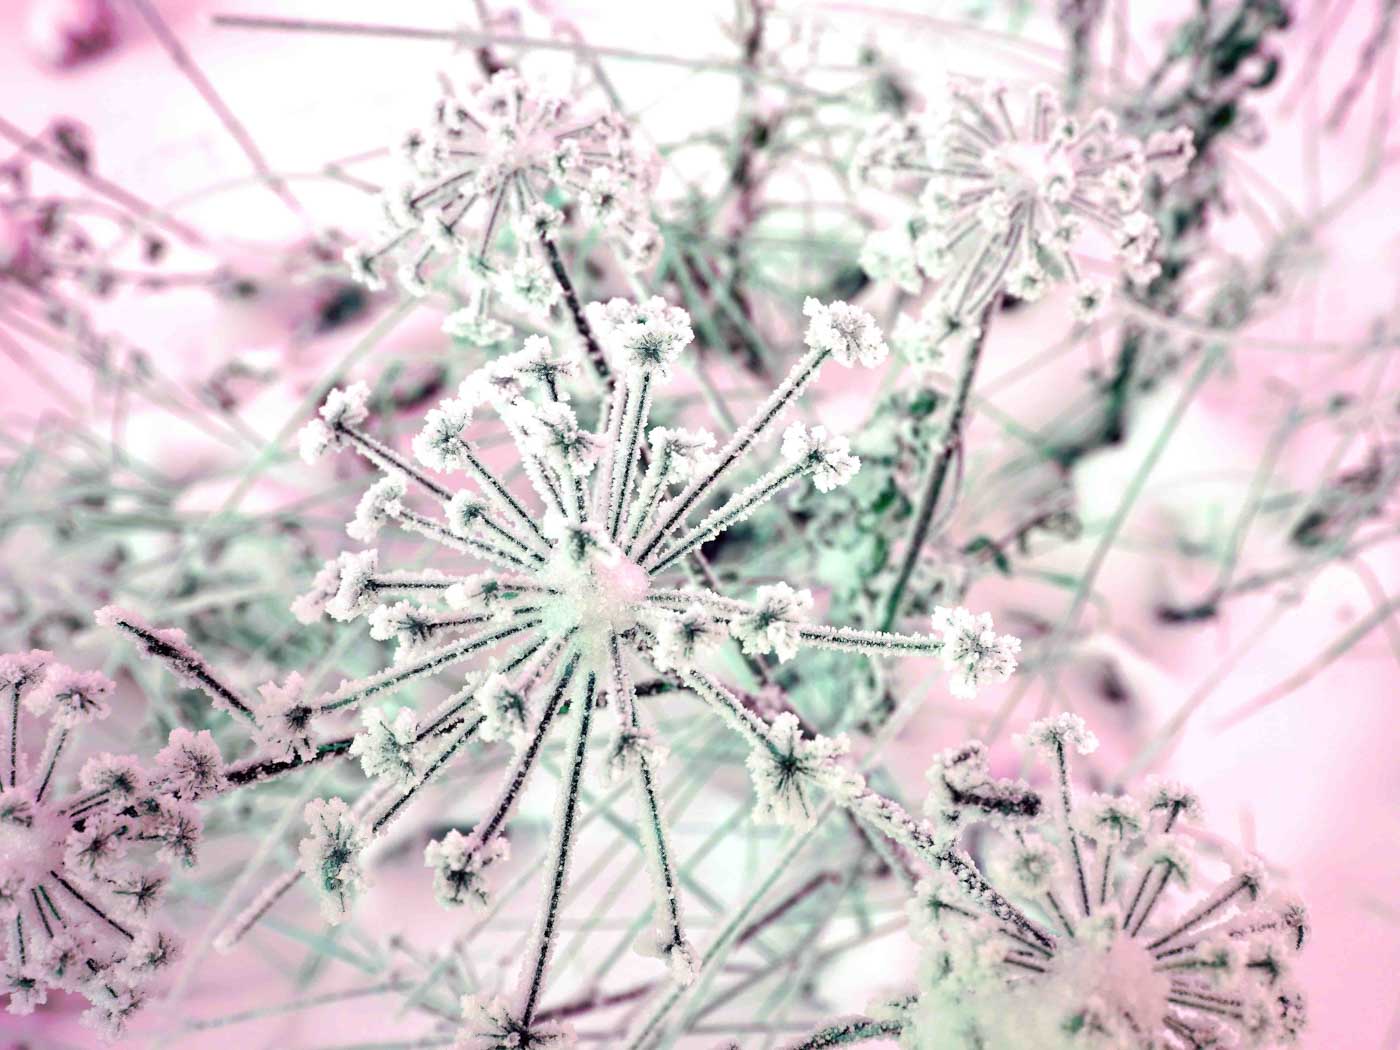 Makrofotografie von Schneekristallen auf vertrockneten Blüten aus Else’s Fotowerkstatt.